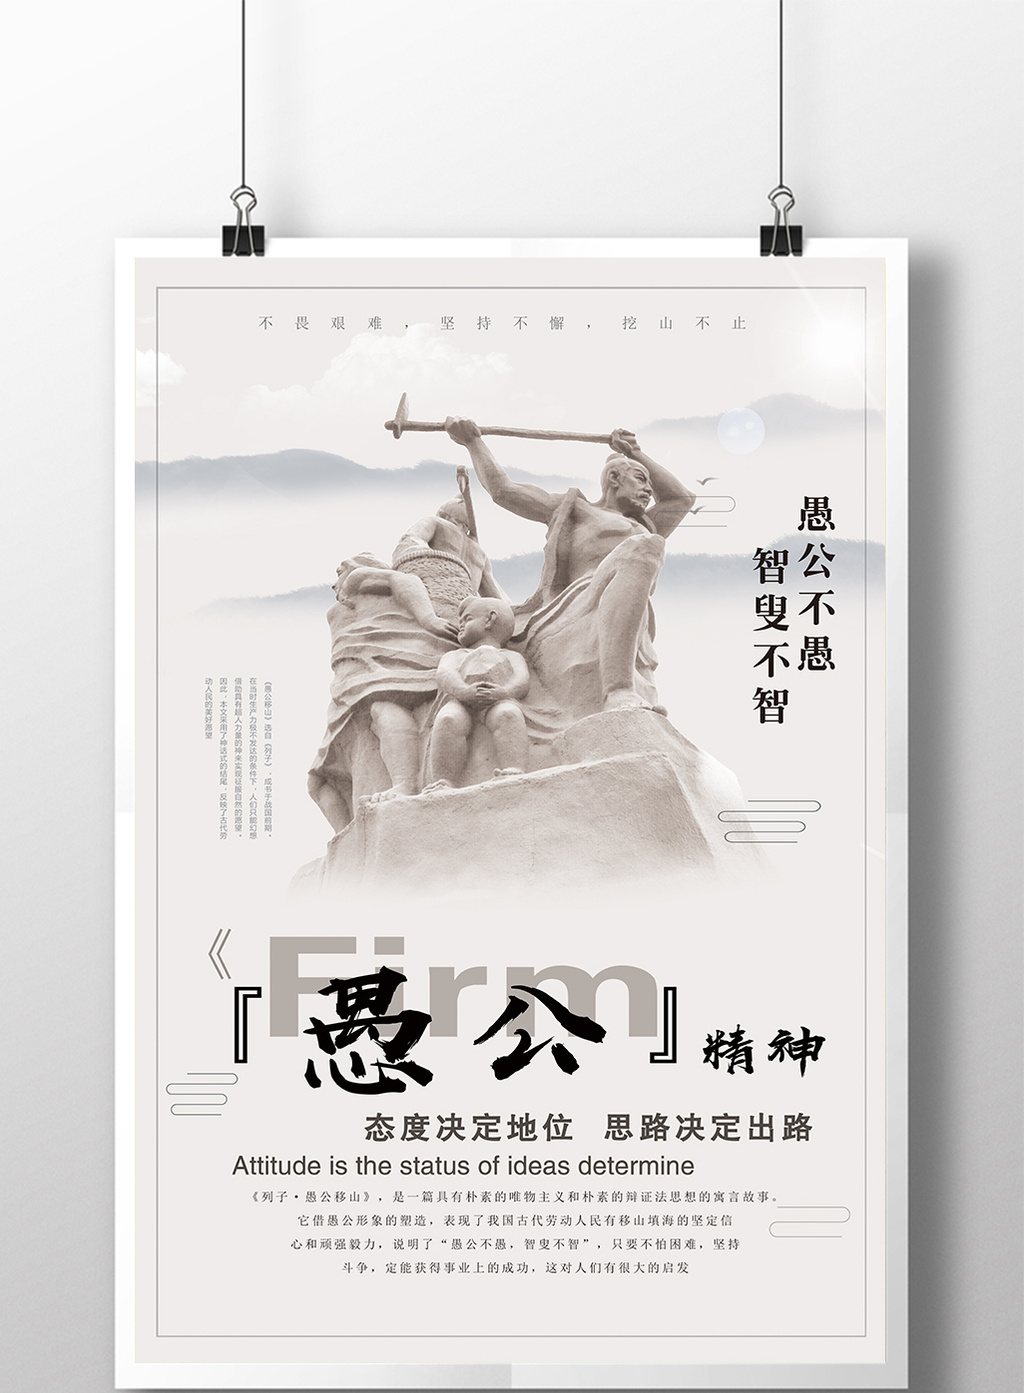 人物画像及字体仅供参考 包图网提供精美好看的中国风愚公移山励志